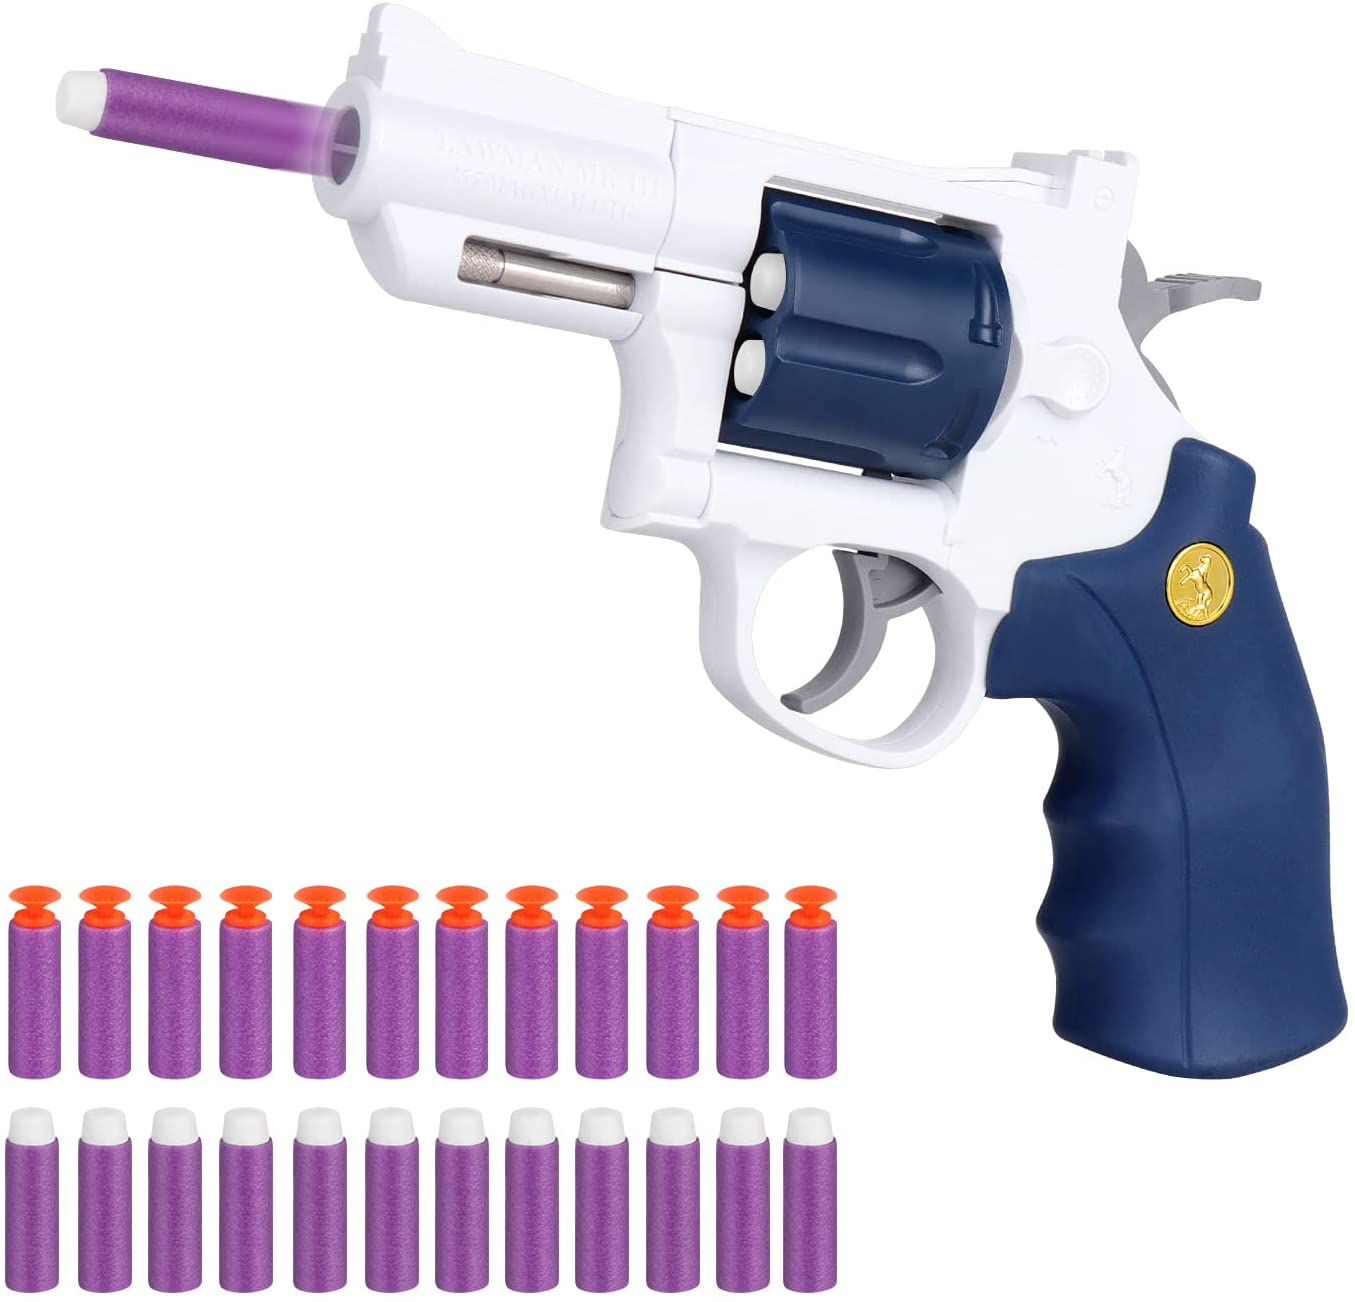 Ferventoys Soft Bullet Toy Guns - Ferventoys